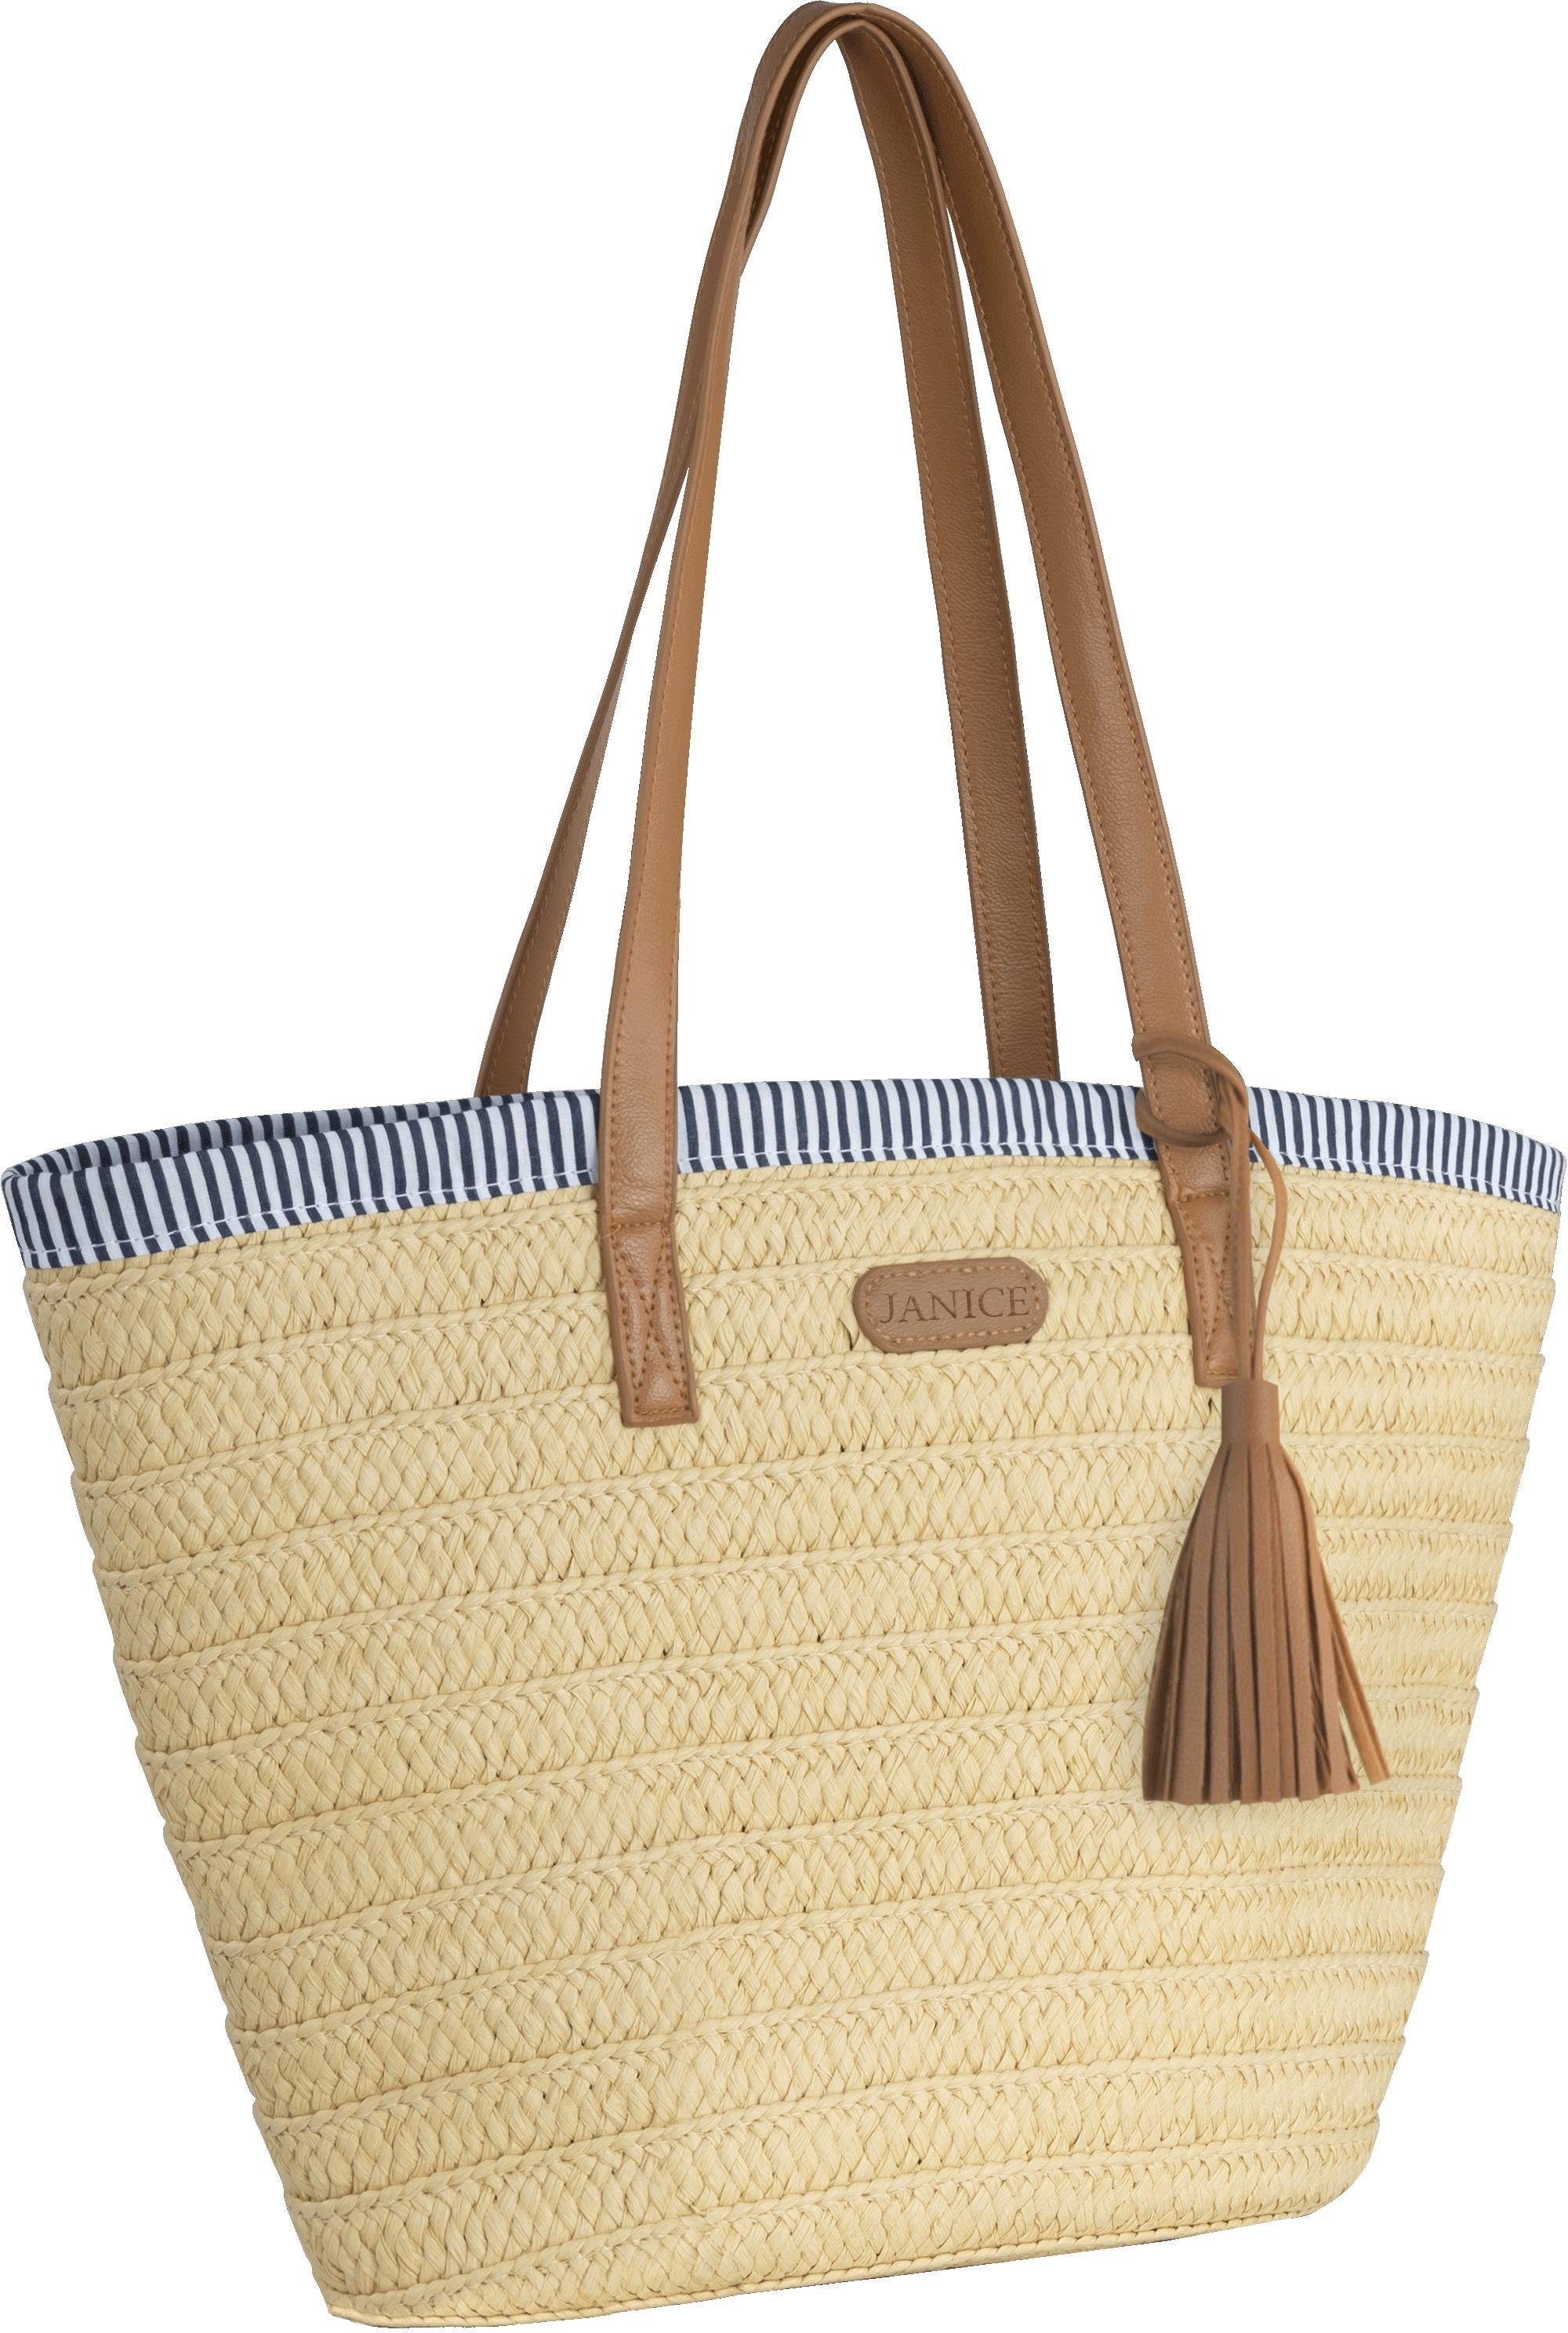 Janice Strandtasche Strandtasche für Maritim-Look Mindanao, aus 10 Liter Damen Sommertasche im Stroh